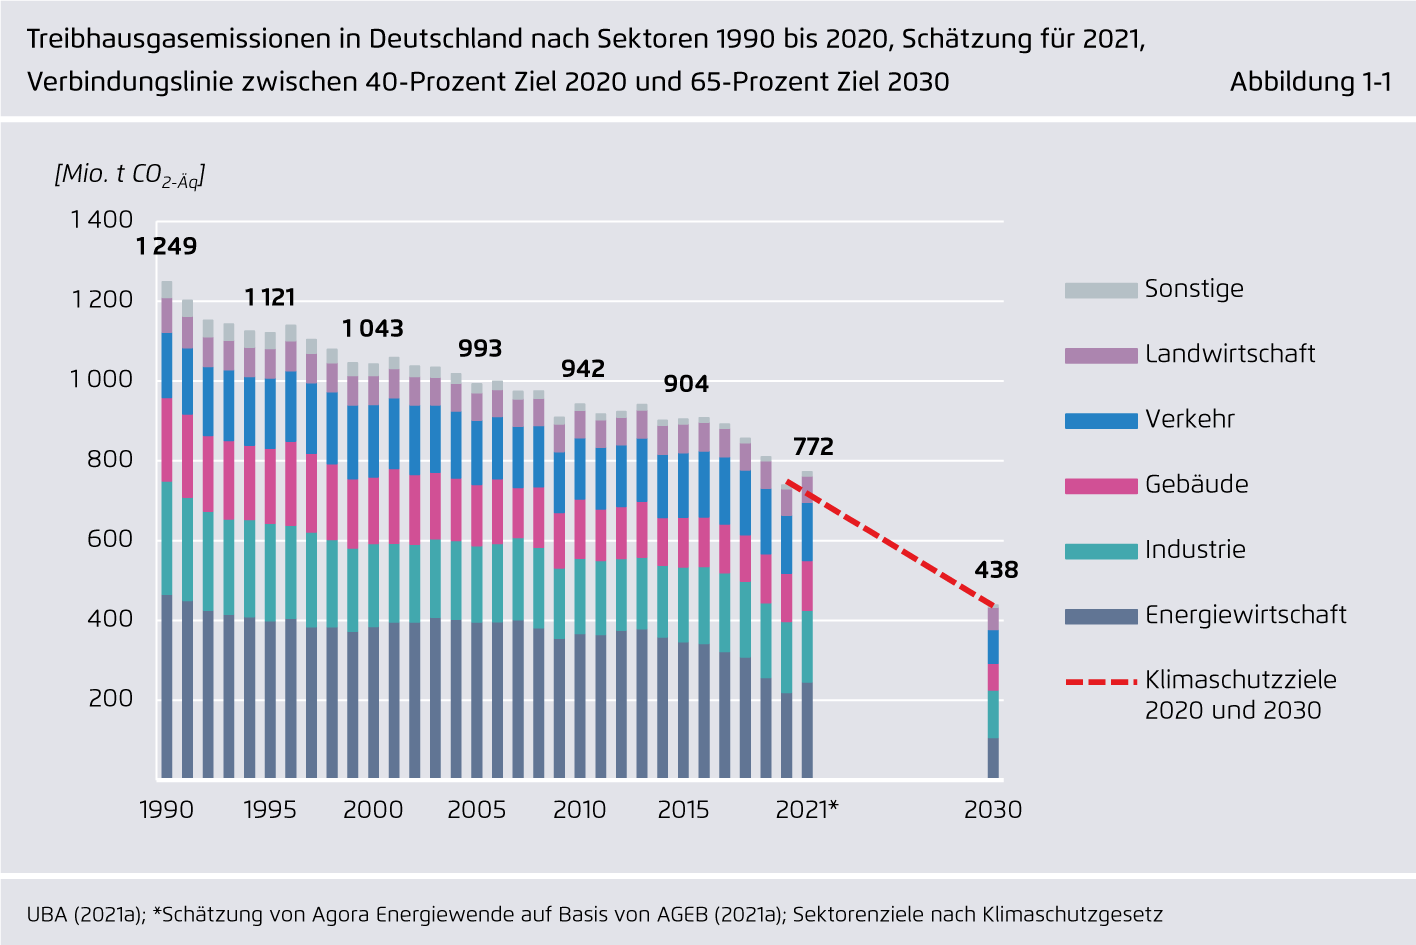 Preview for Treibhausgasemissionen in Deutschland nach Sektoren 1990 bis 2020, Schätzung für 2021, Verbindungslinie zwischen 40-Prozent Ziel 2020 und 65-Prozent Ziel 2030